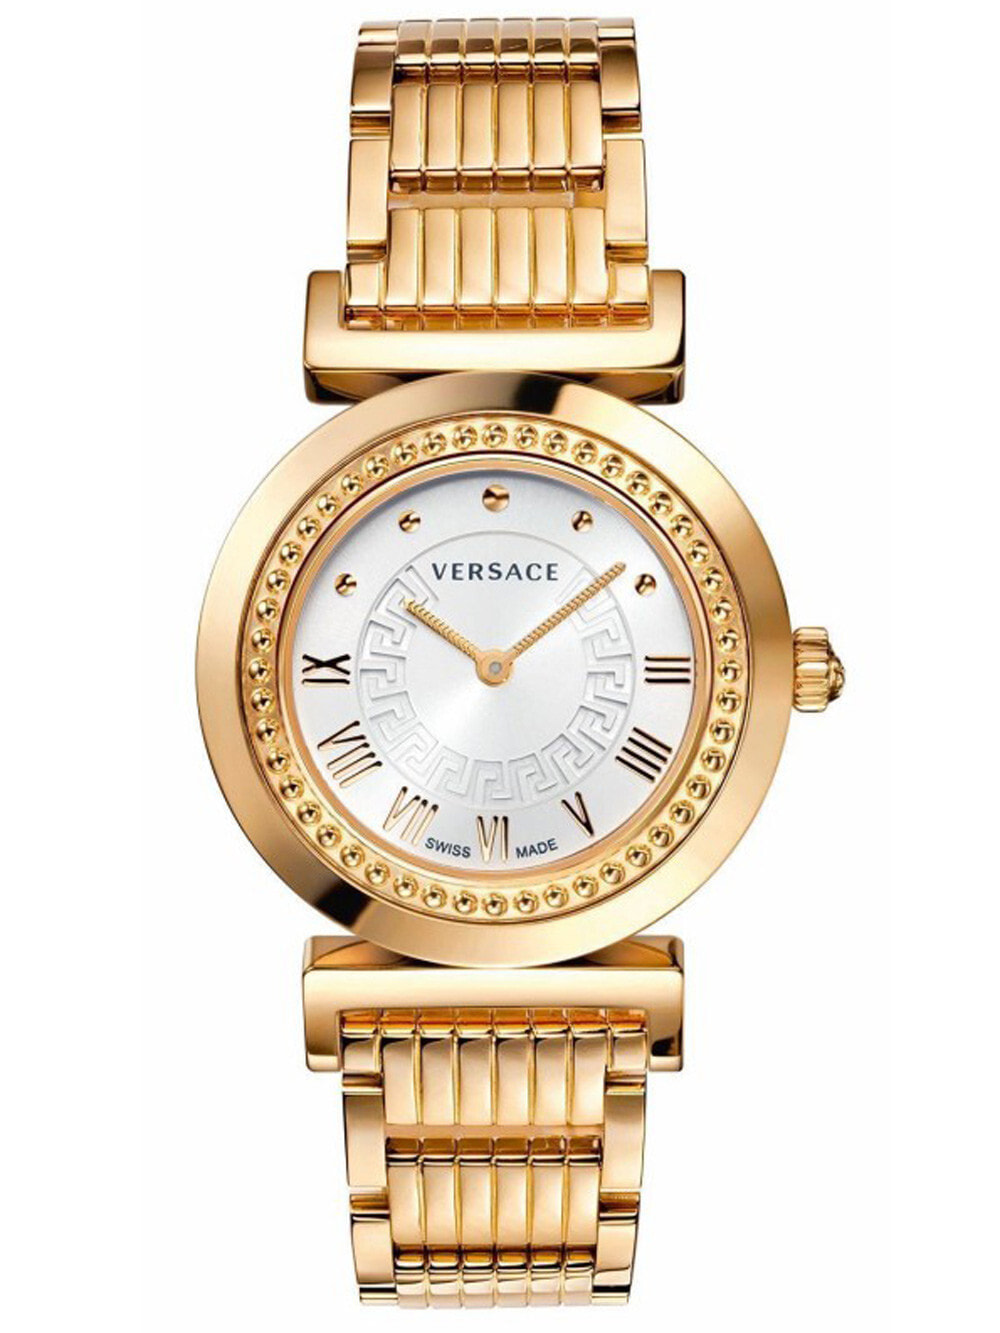 Женские наручные кварцевые часы Versace Циферблат часов украшен логотипом Versace.  Браслет стальной с IP покрытием. Водозащита 30WR. Стекло сапфировое.